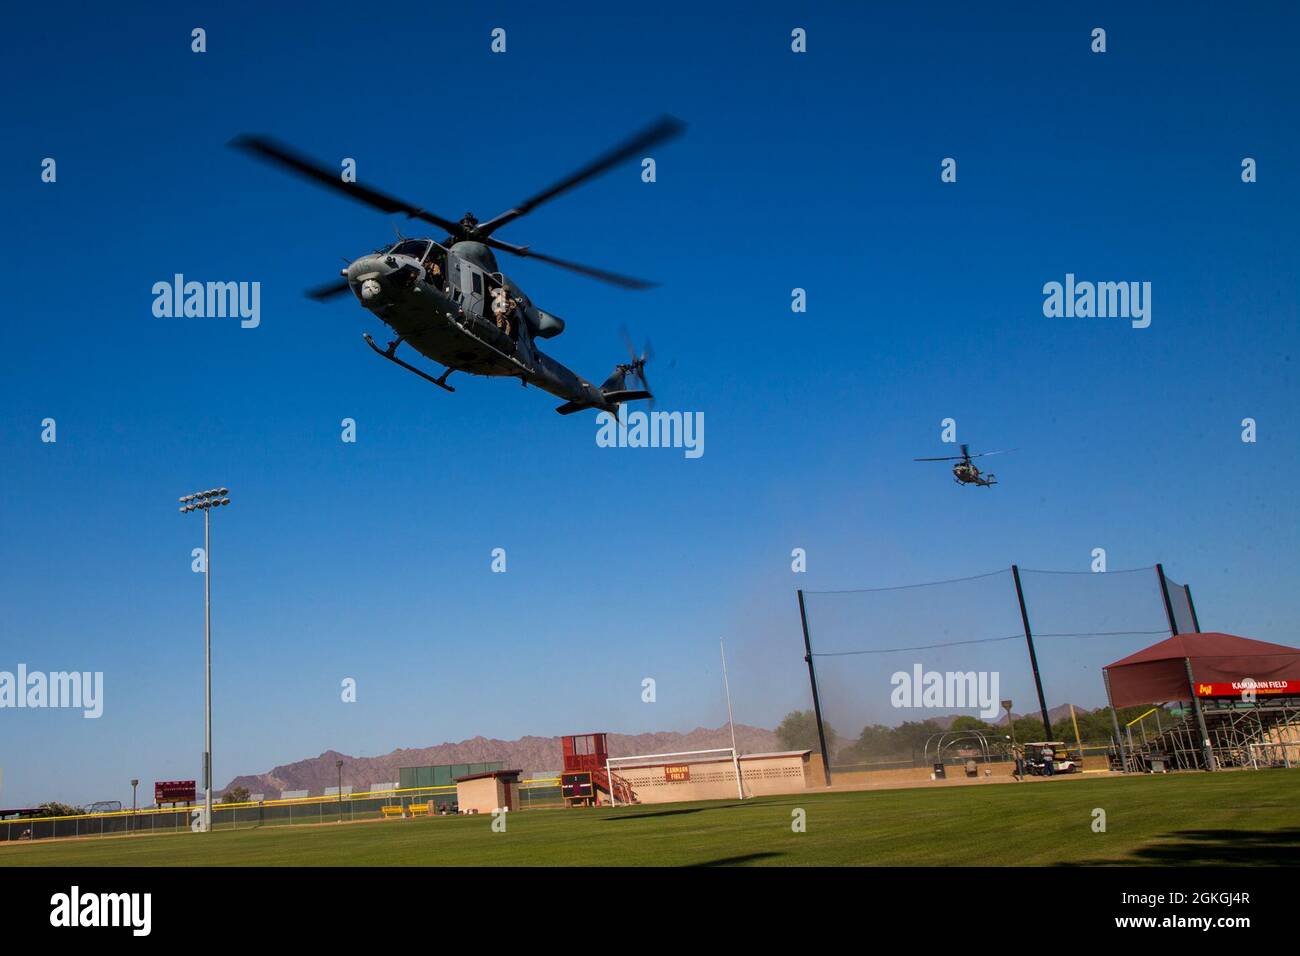 Venenos UH-1Y del Cuerpo de Infantería de Marina de los Estados Unidos, asignados al Escuadrón Uno de Armas y Tácticas de Aviación Marina (MAWTS-1), tierras durante las Tácticas de Apoyo a la Agresión 3 (AST-3), Ejercicio de Asistencia Humanitaria Extranjera, en apoyo al Curso de Instructor de Armas y Tácticas (WTI) 2-21, en el Arizona Western College, en Yuma, Arizona, Arizona, 16 de abril de 2021. WTI es un evento de capacitación de siete semanas organizado por MAWTS-1, que proporciona entrenamiento táctico avanzado estandarizado y certificación de las calificaciones de instructores de la unidad para apoyar el entrenamiento y preparación de la aviación marina, y ayuda en el desarrollo y empleo de armas y tácticas de aviación. Foto de stock